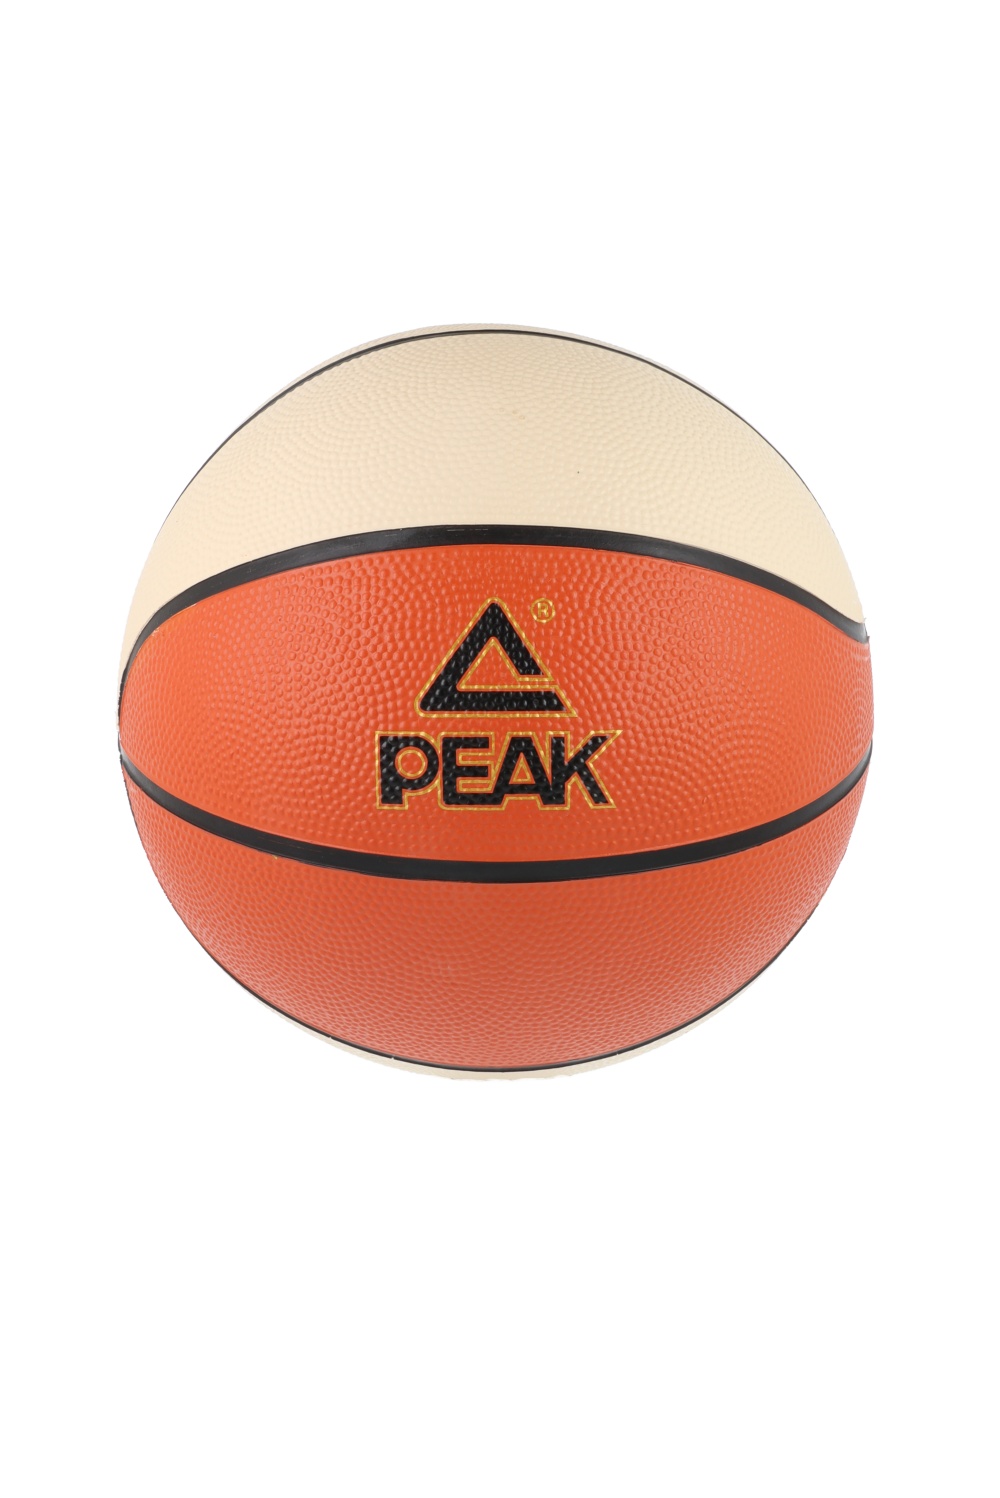 PEAK Basketball Gummi